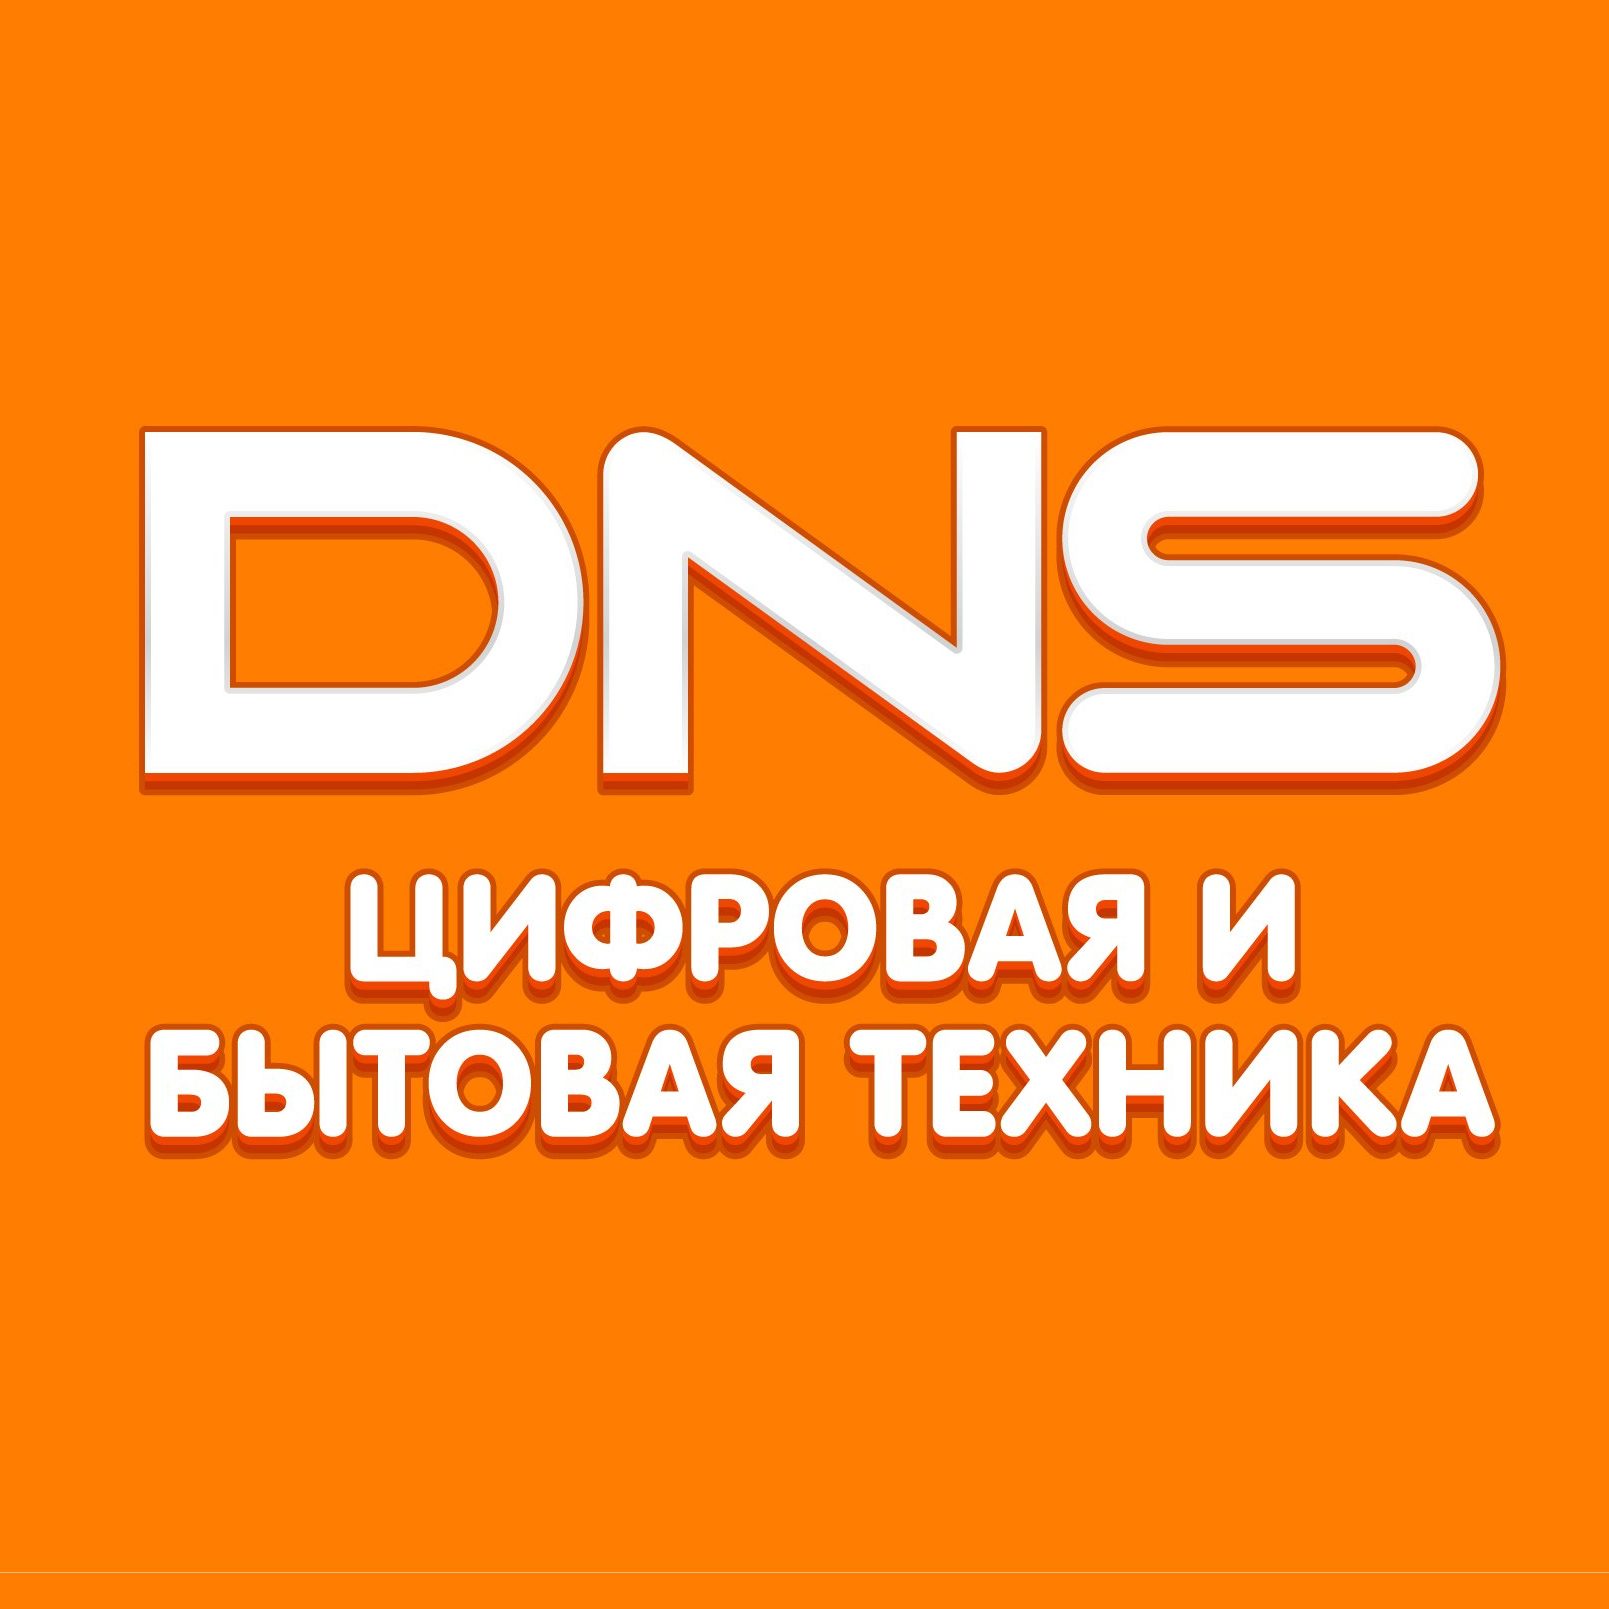 Открылся магазин бытовой техники DNS